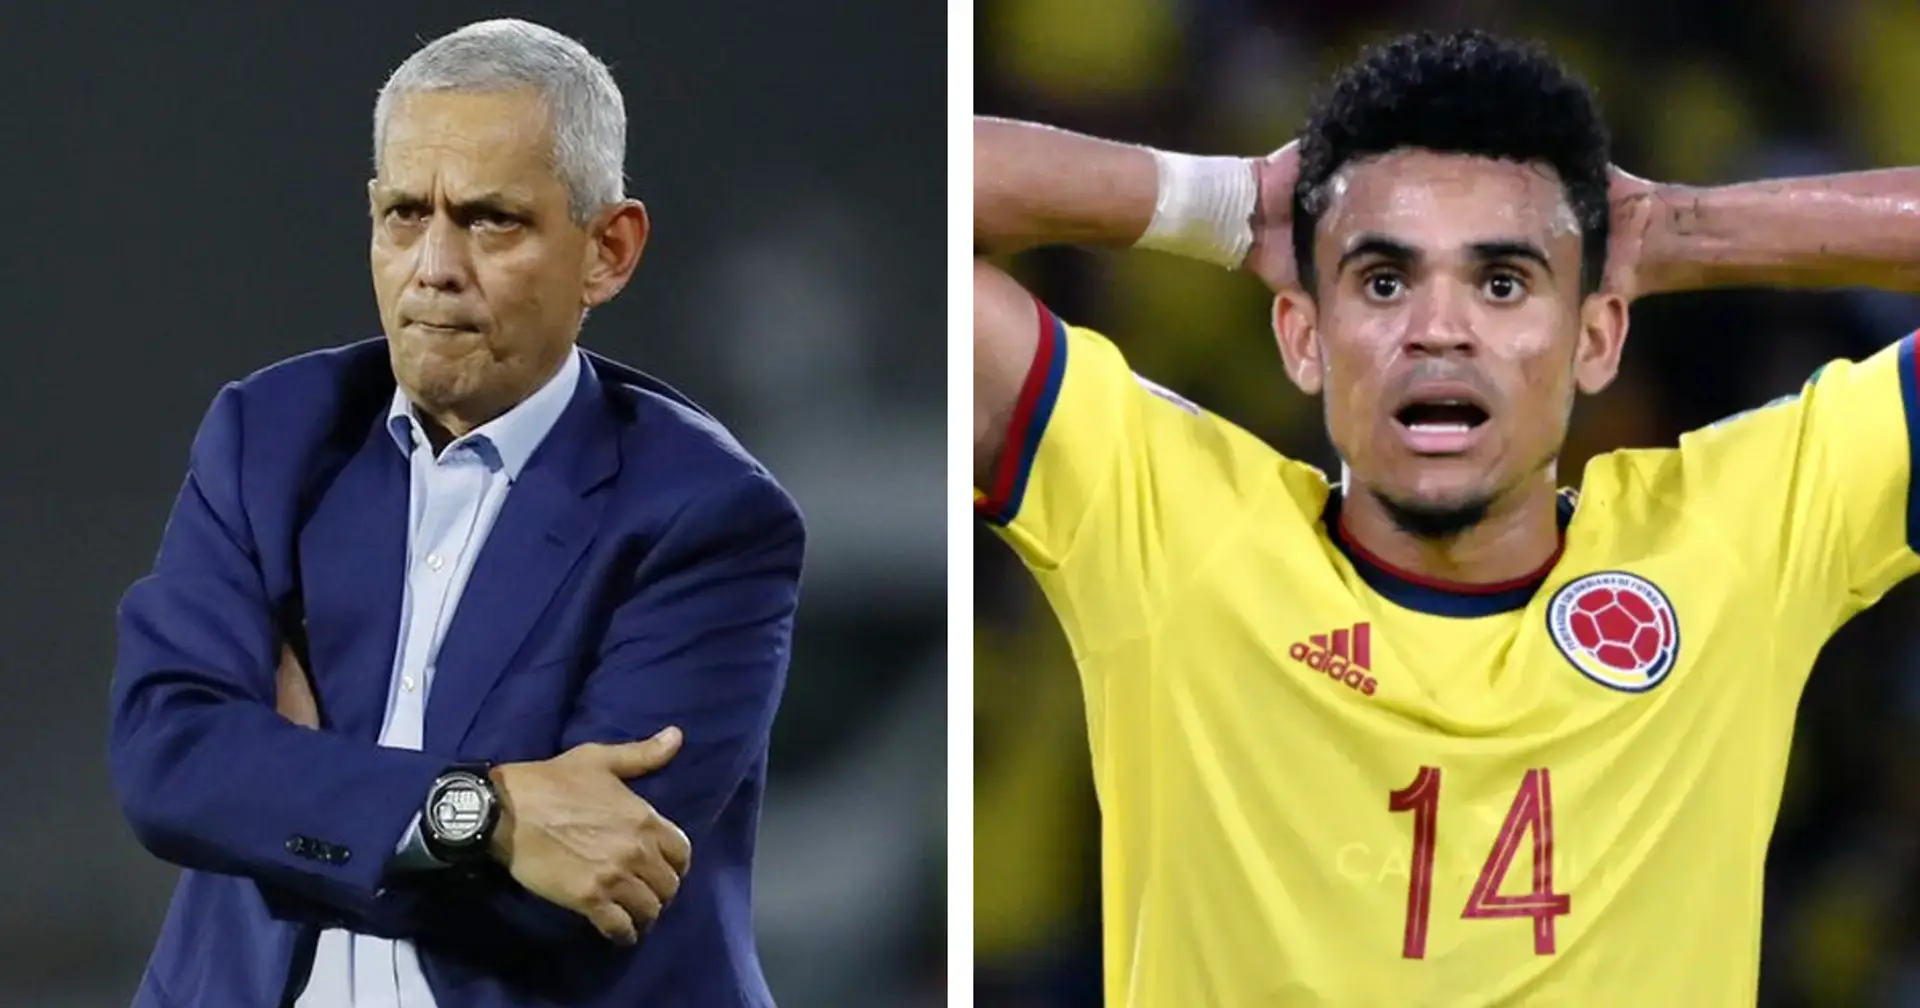 Unglücklichste Trainer des Jahres? Coach leitet Chile und Kolumbien in derselben WM-Qualifikation, beide scheiden aus